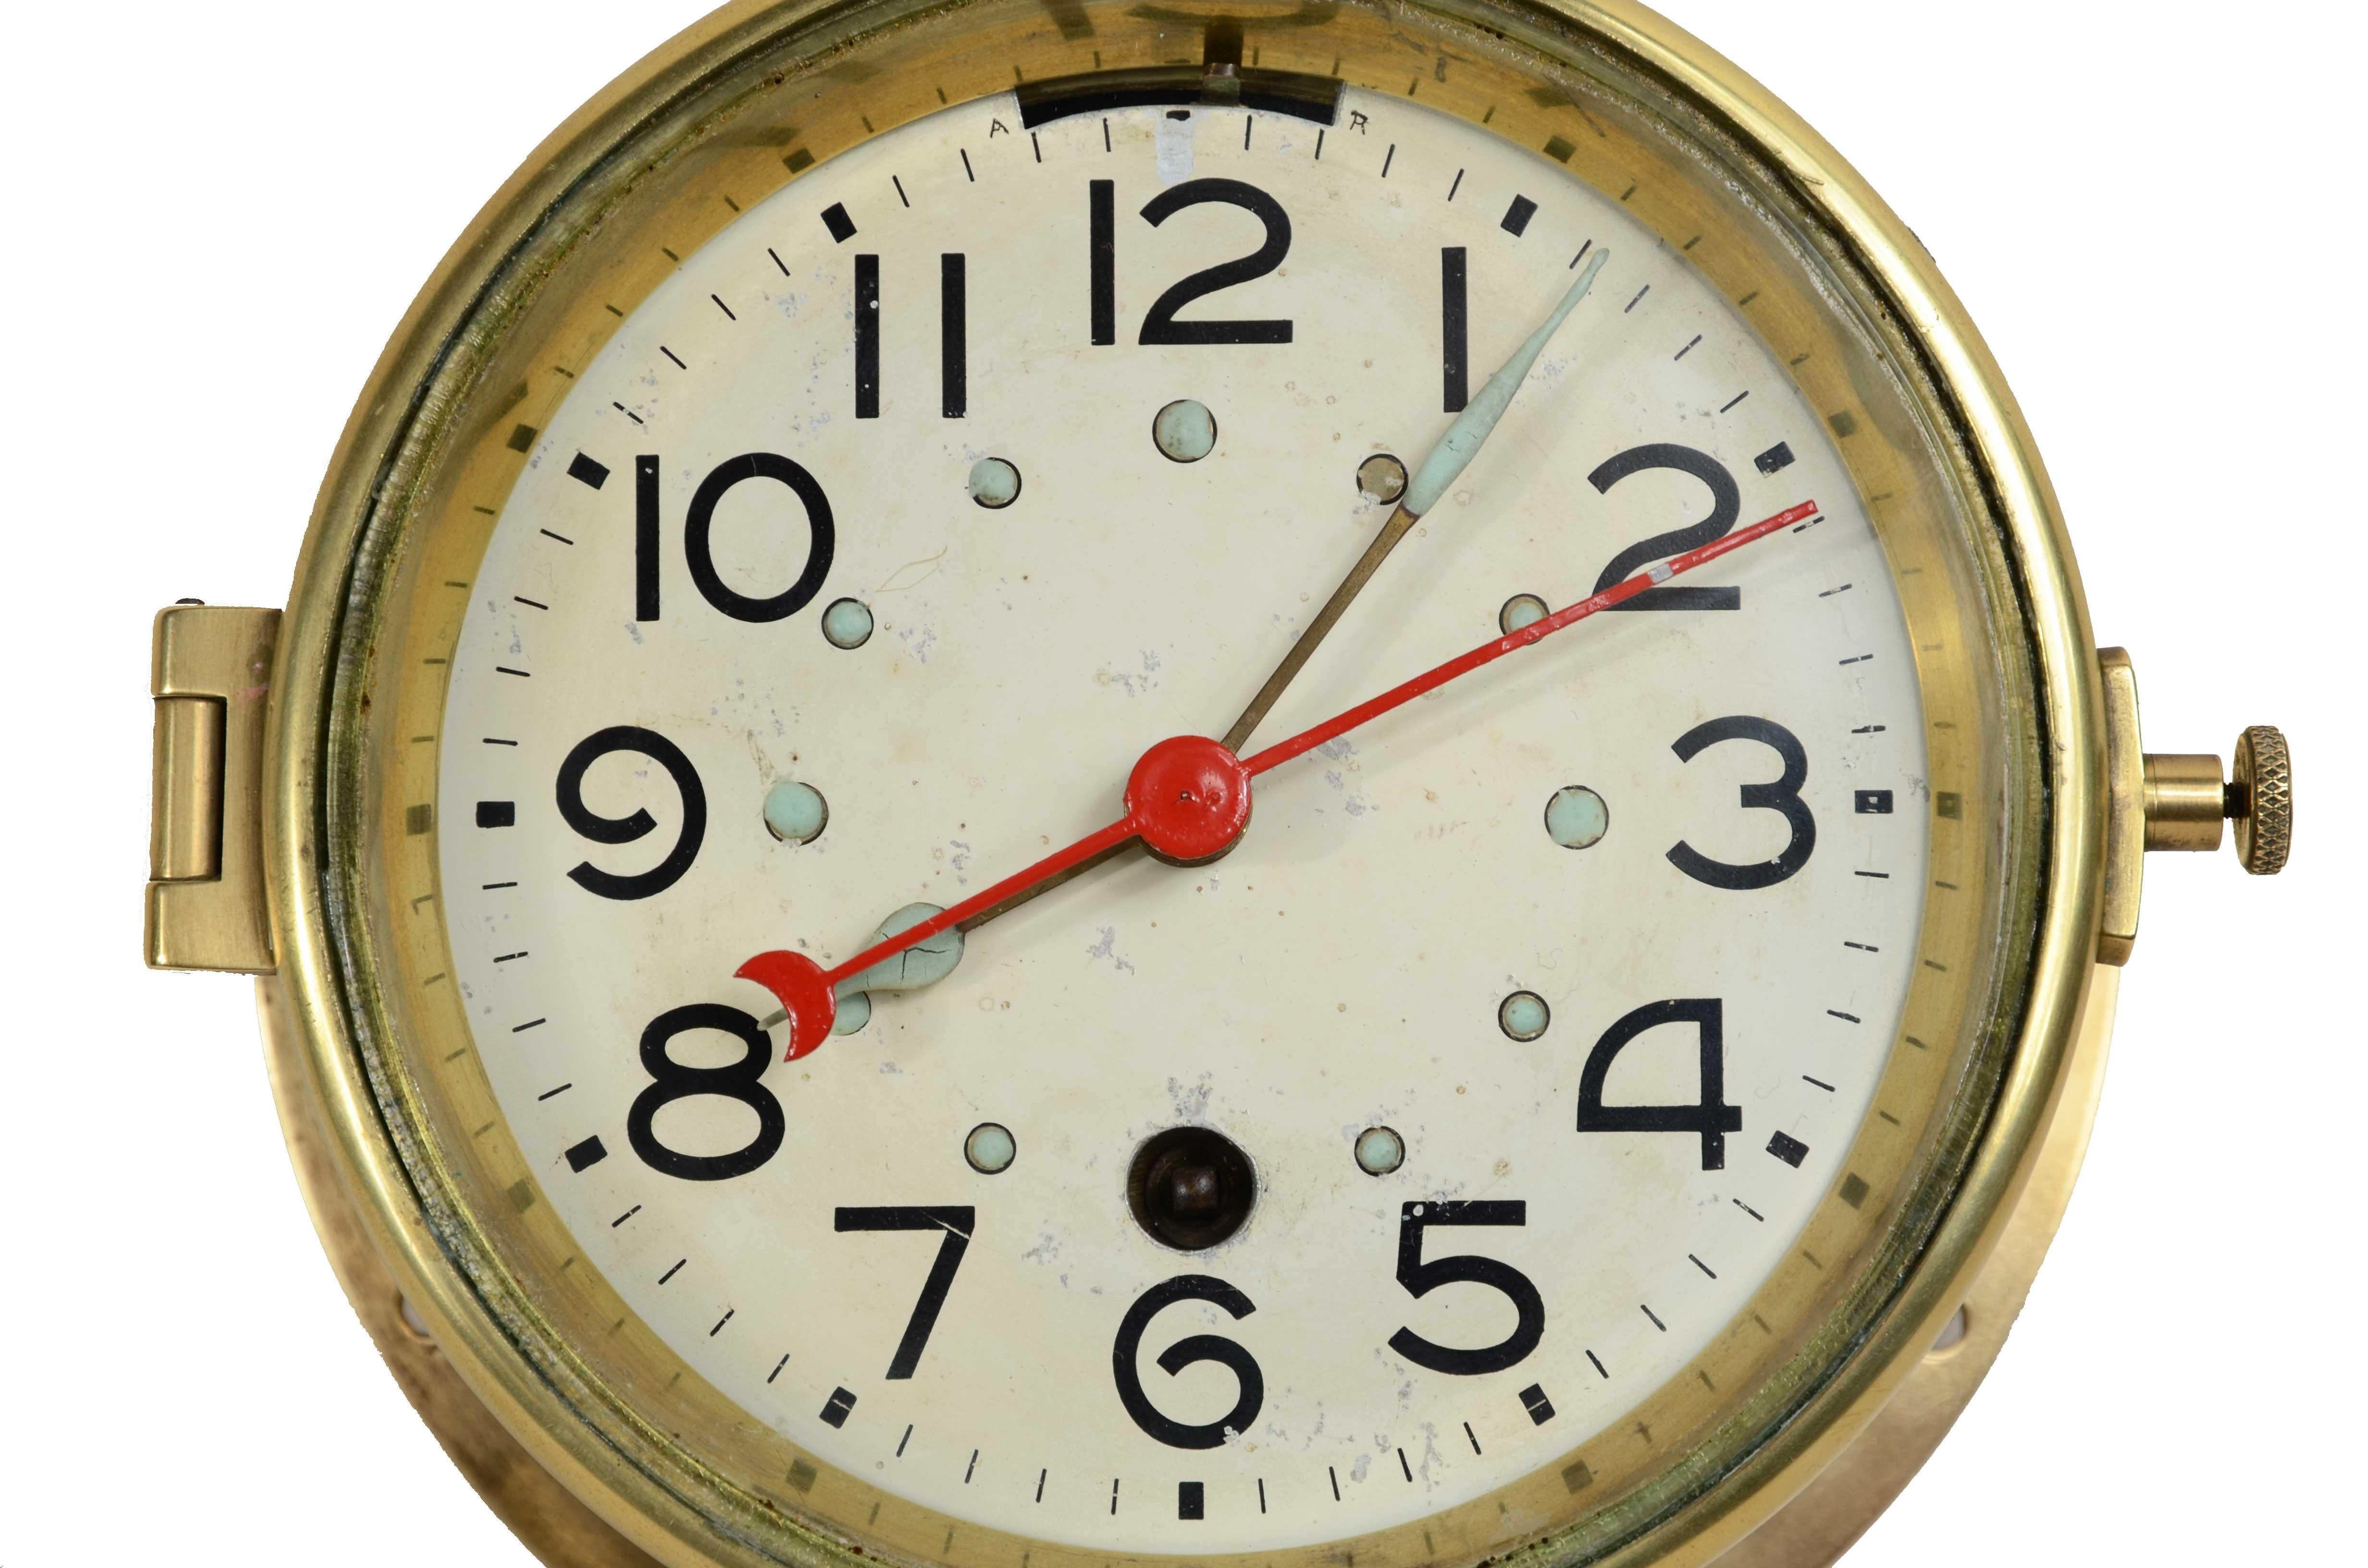 Nautische Wanduhr aus Messing mit 7-Tage-Federaufzug, signiert S. Marti Montbeliard  Großer Preis  Paris 1931, Samuel Marti war ein bekannter Pariser Uhrmacher des 19. Jahrhunderts. Durchmesser 16,8 cm - Zoll 6,7, Tiefe 7,5 cm - Zoll 2,8. 
Überholt